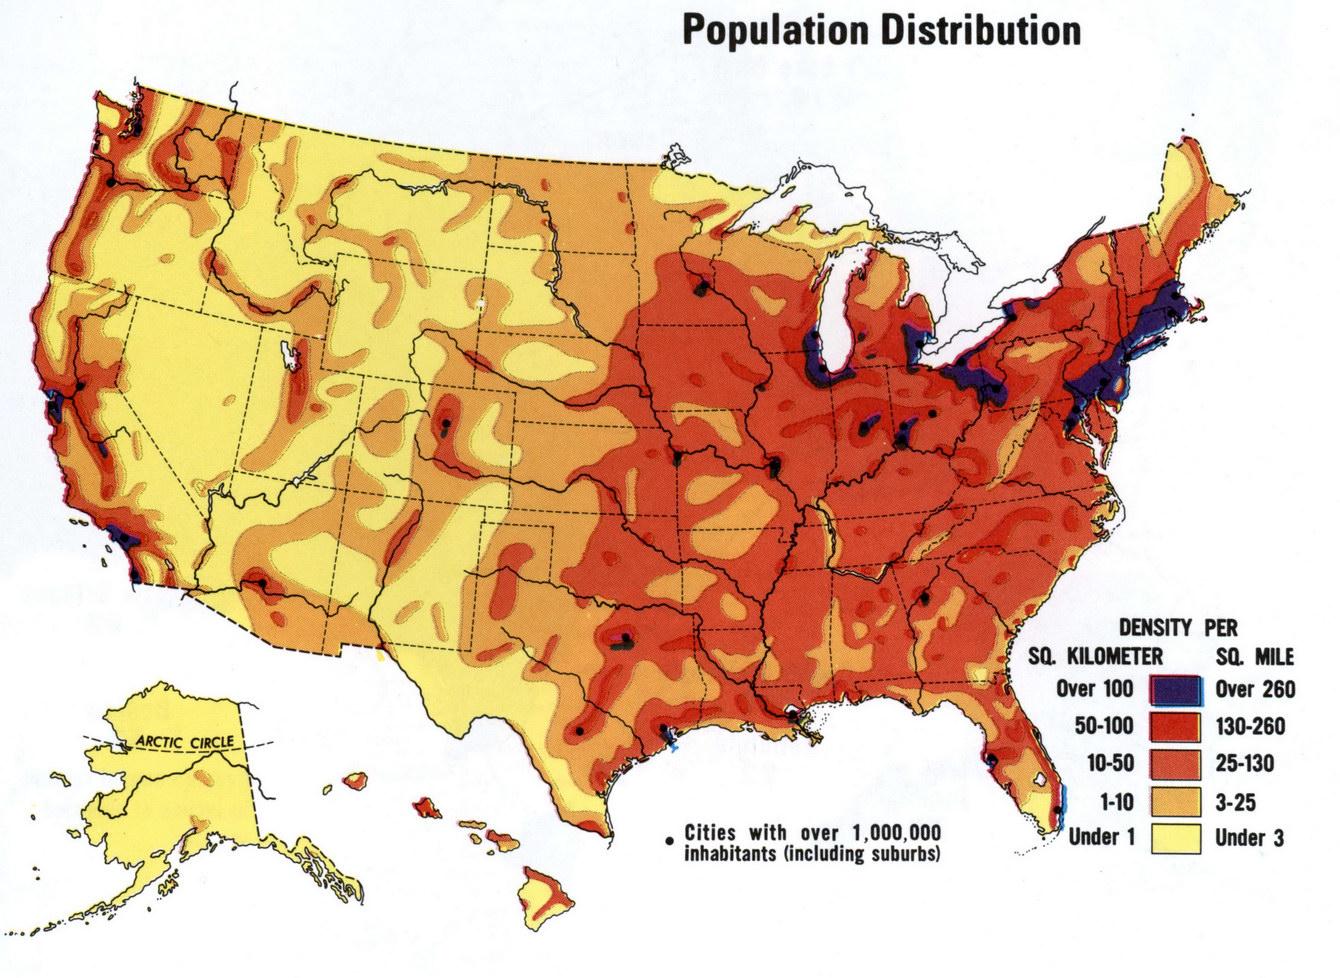 خريطةتوزيع السكان في وطني خريطةسكانية بشرية